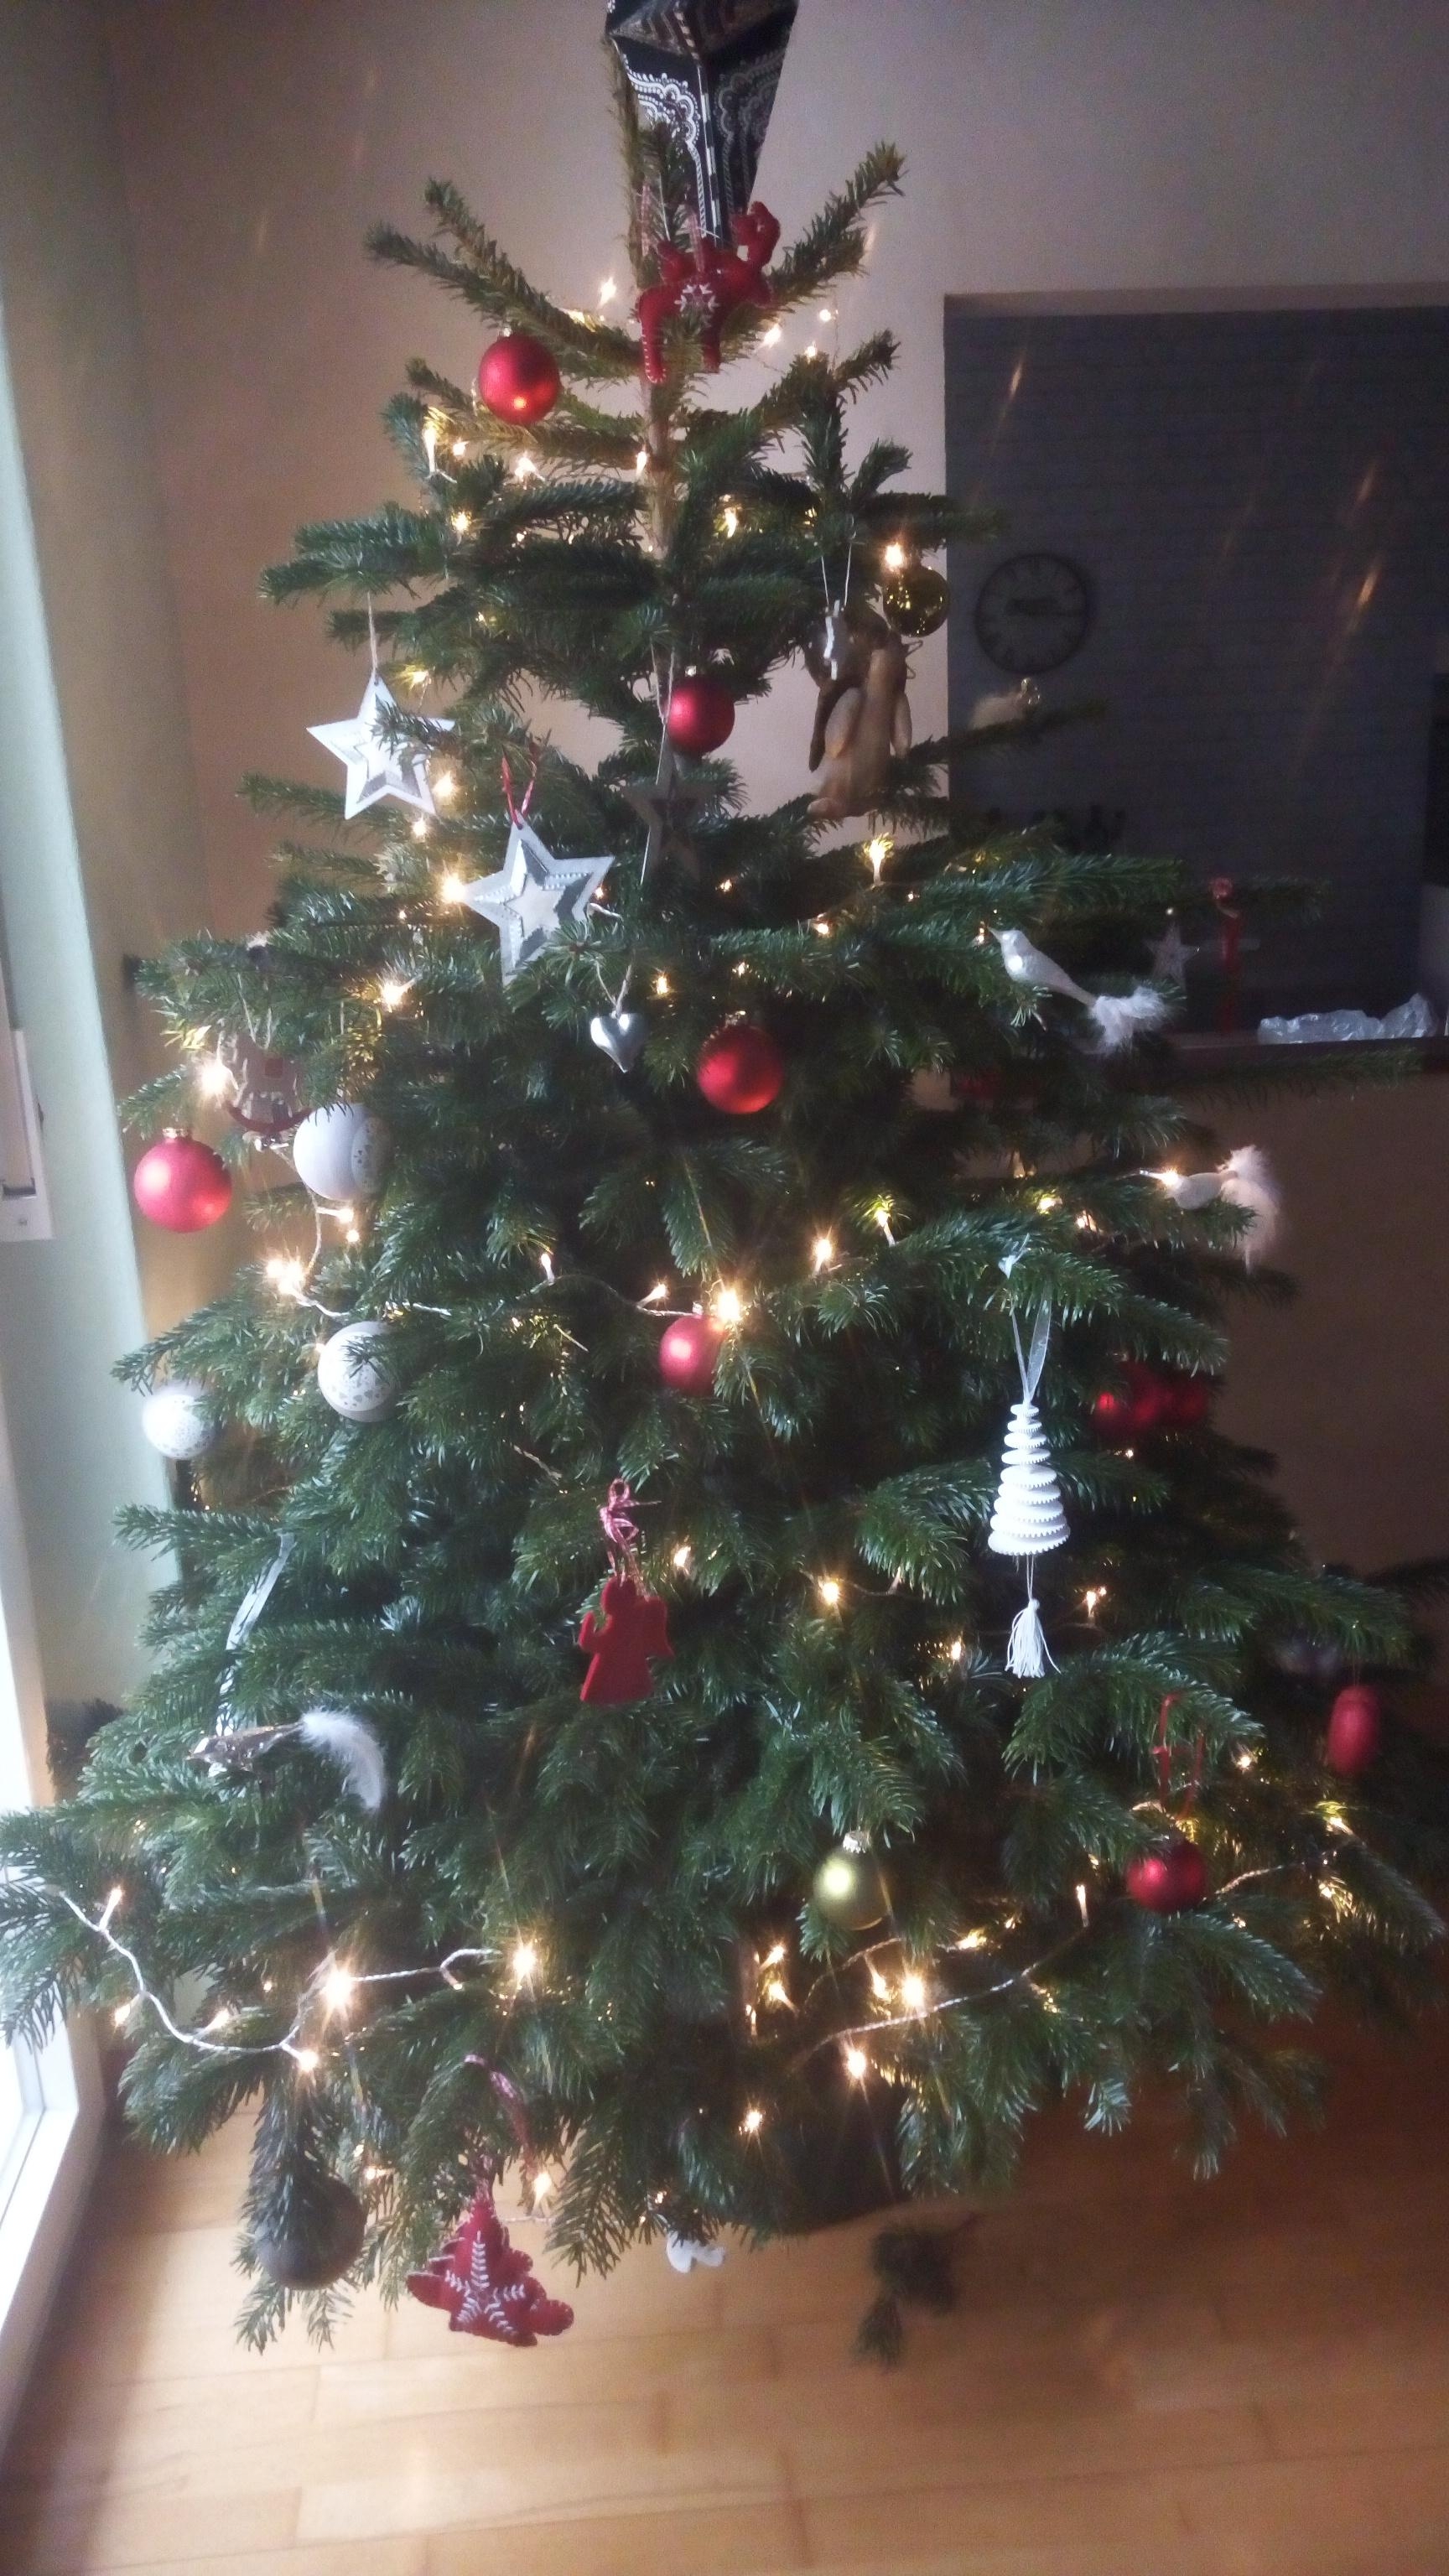 Unser Weihnachtsbaum von den Enkeln(3 und 5) geschmückt, im Scandistyle